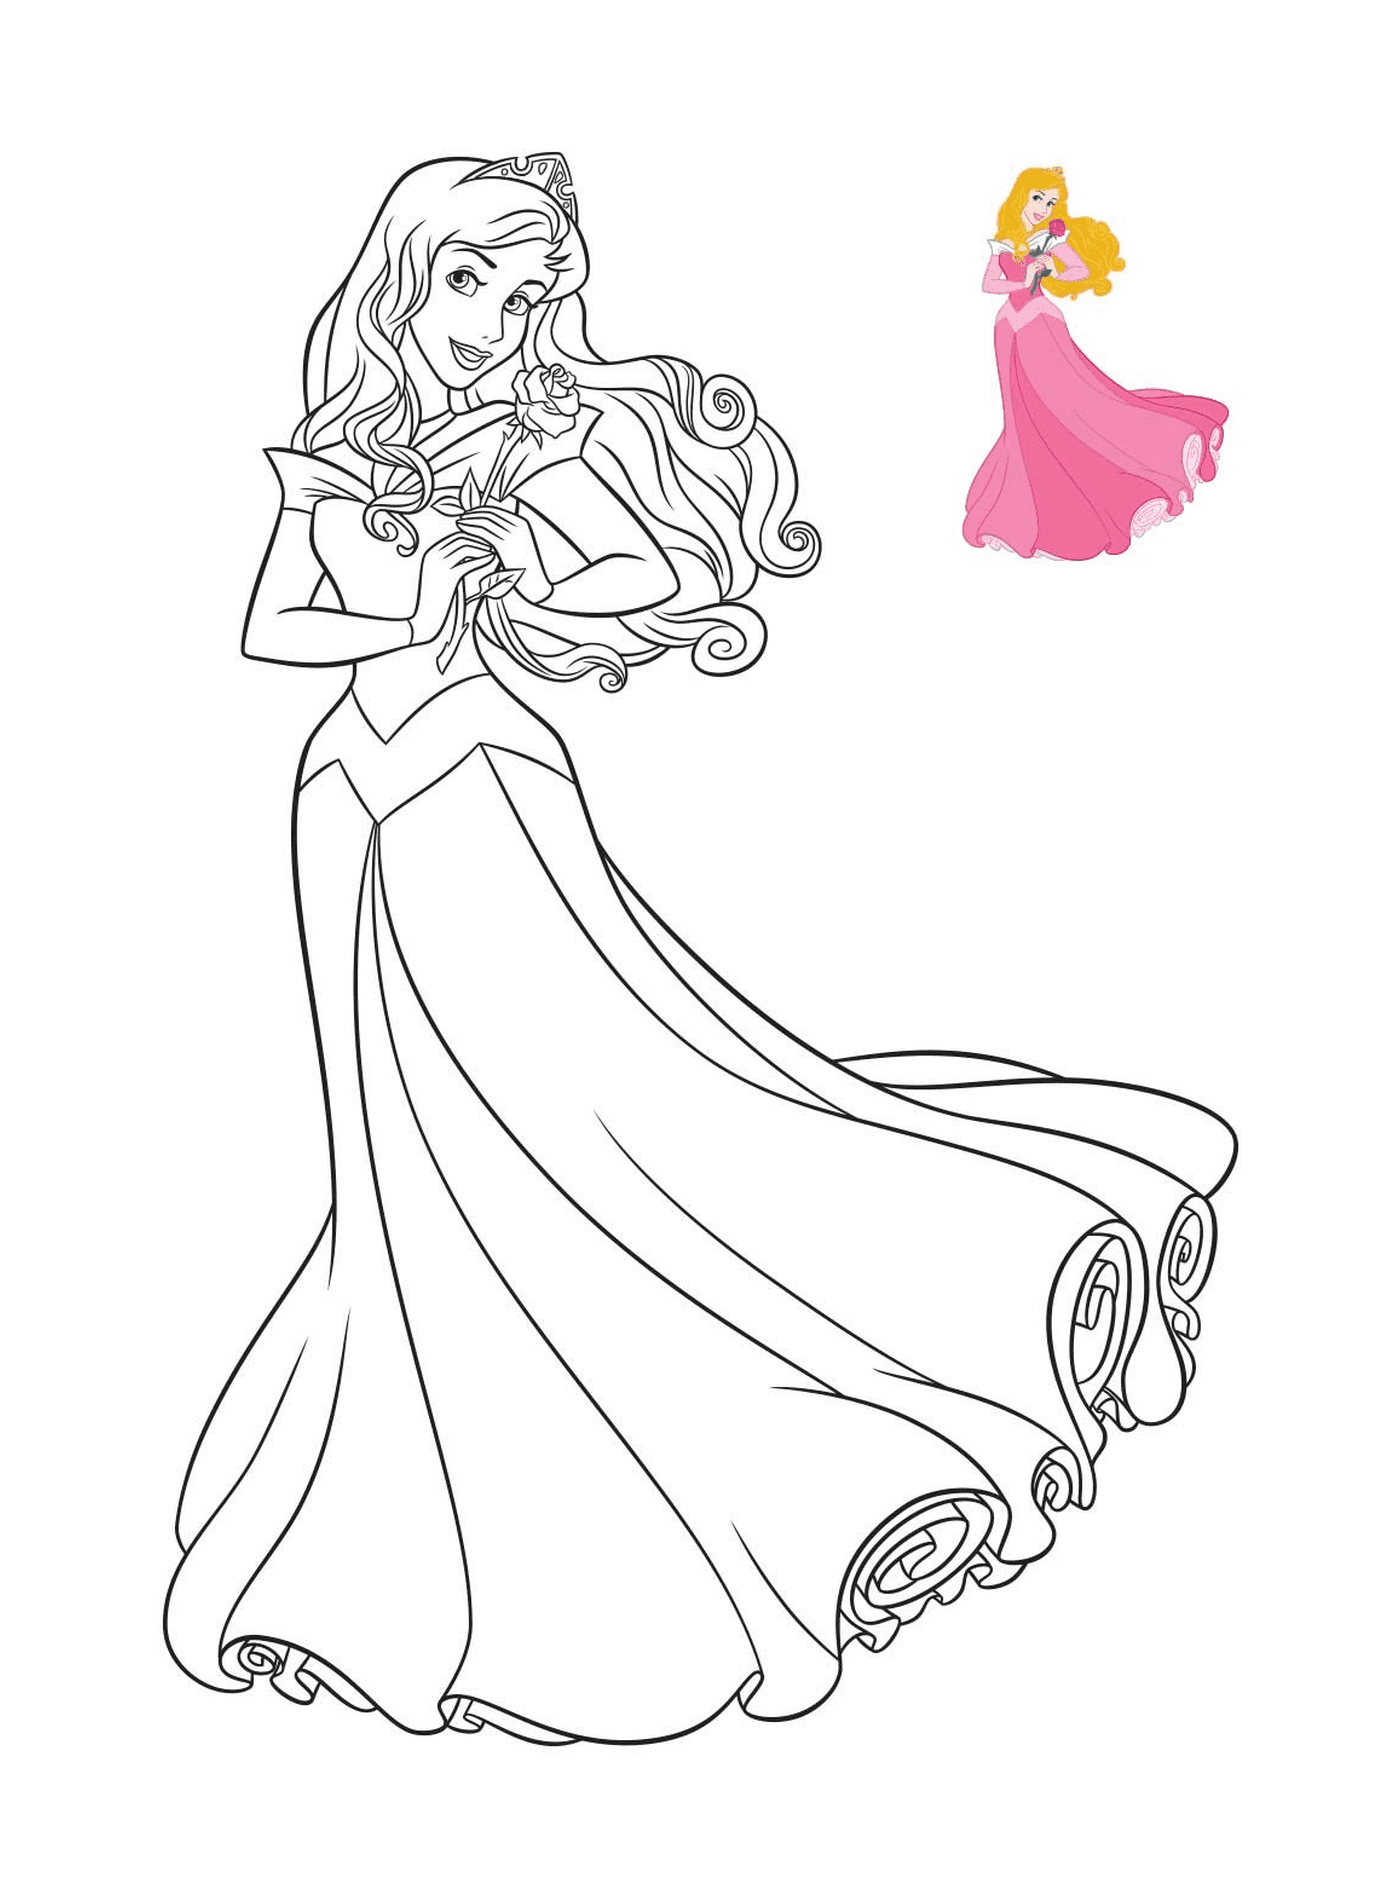  Aurore, a Disney princess 